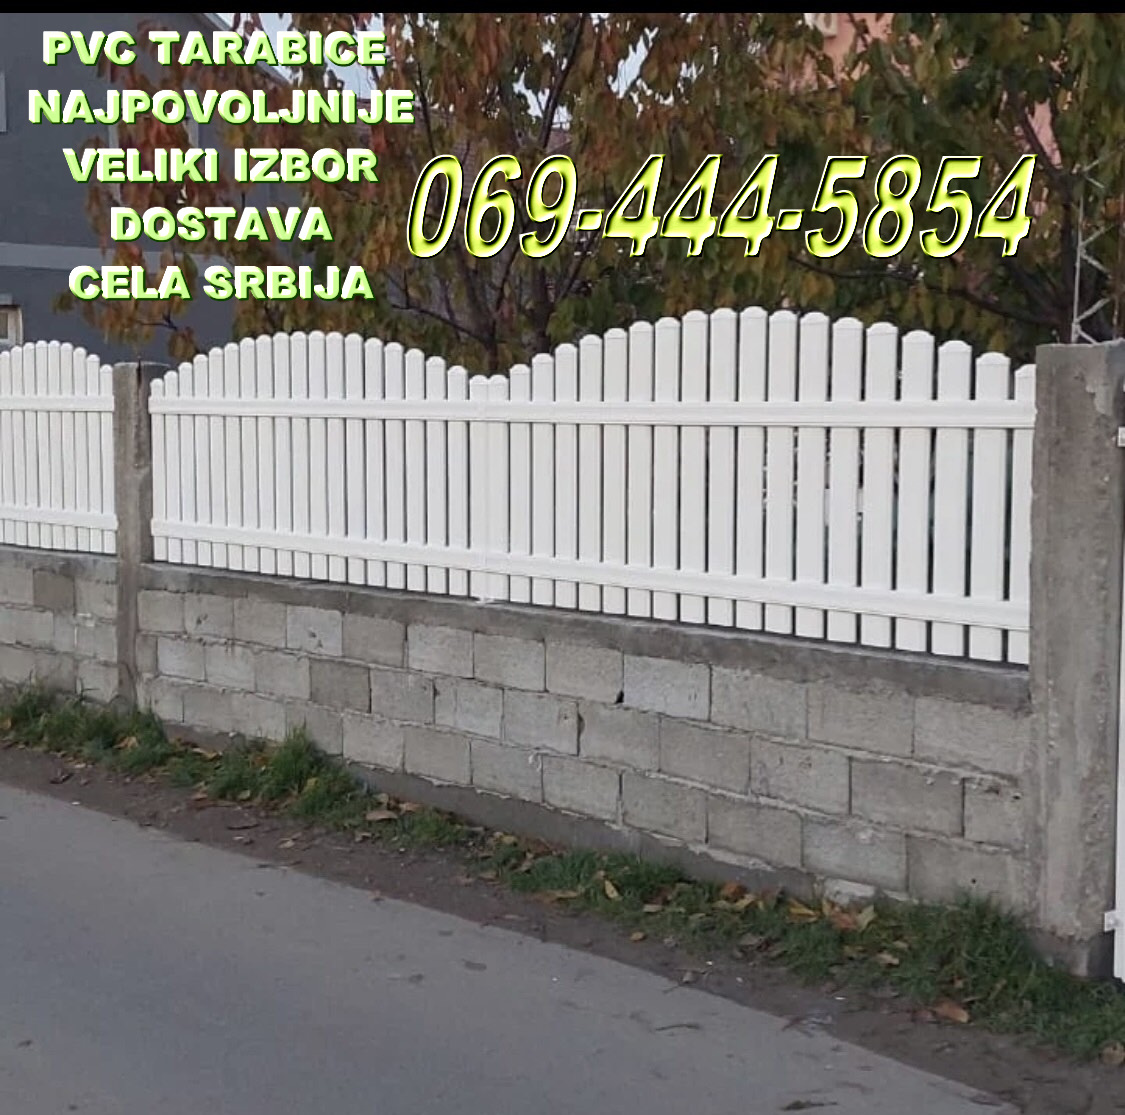 20 pvc tarabice kragujevac dostava cela srbija pozovite 069-444-5854